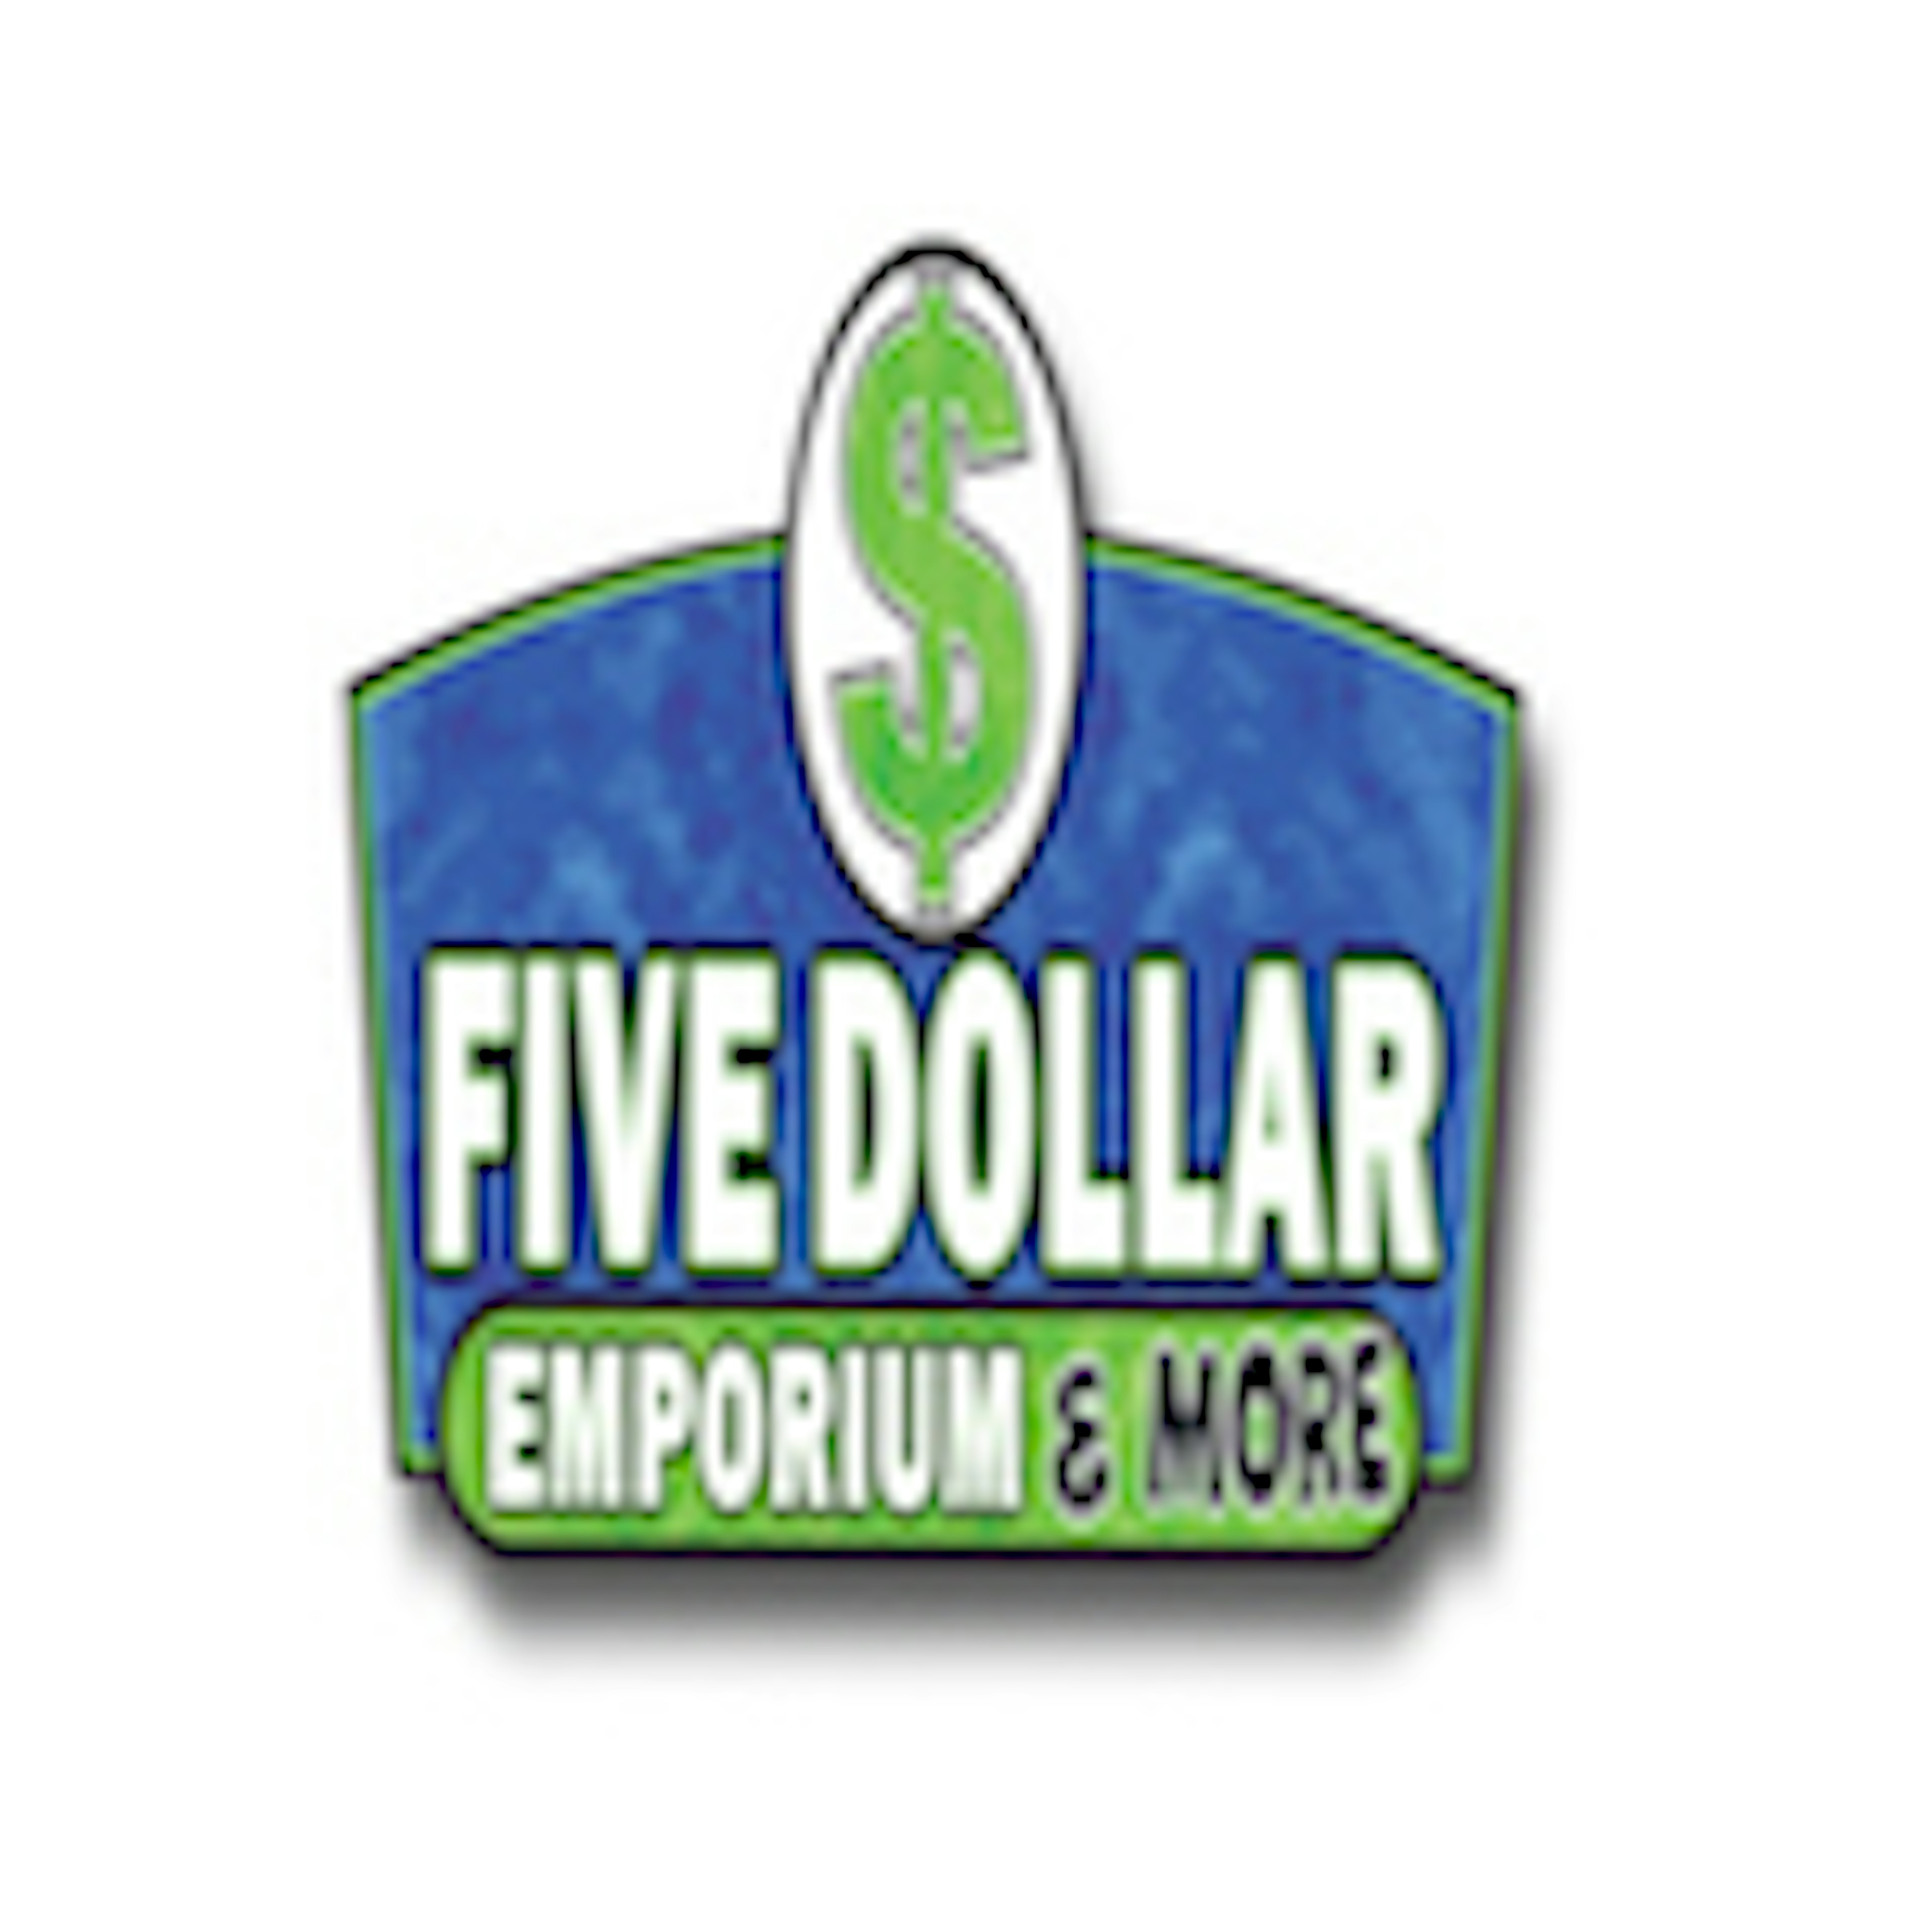 Five Dollar Emporium & More